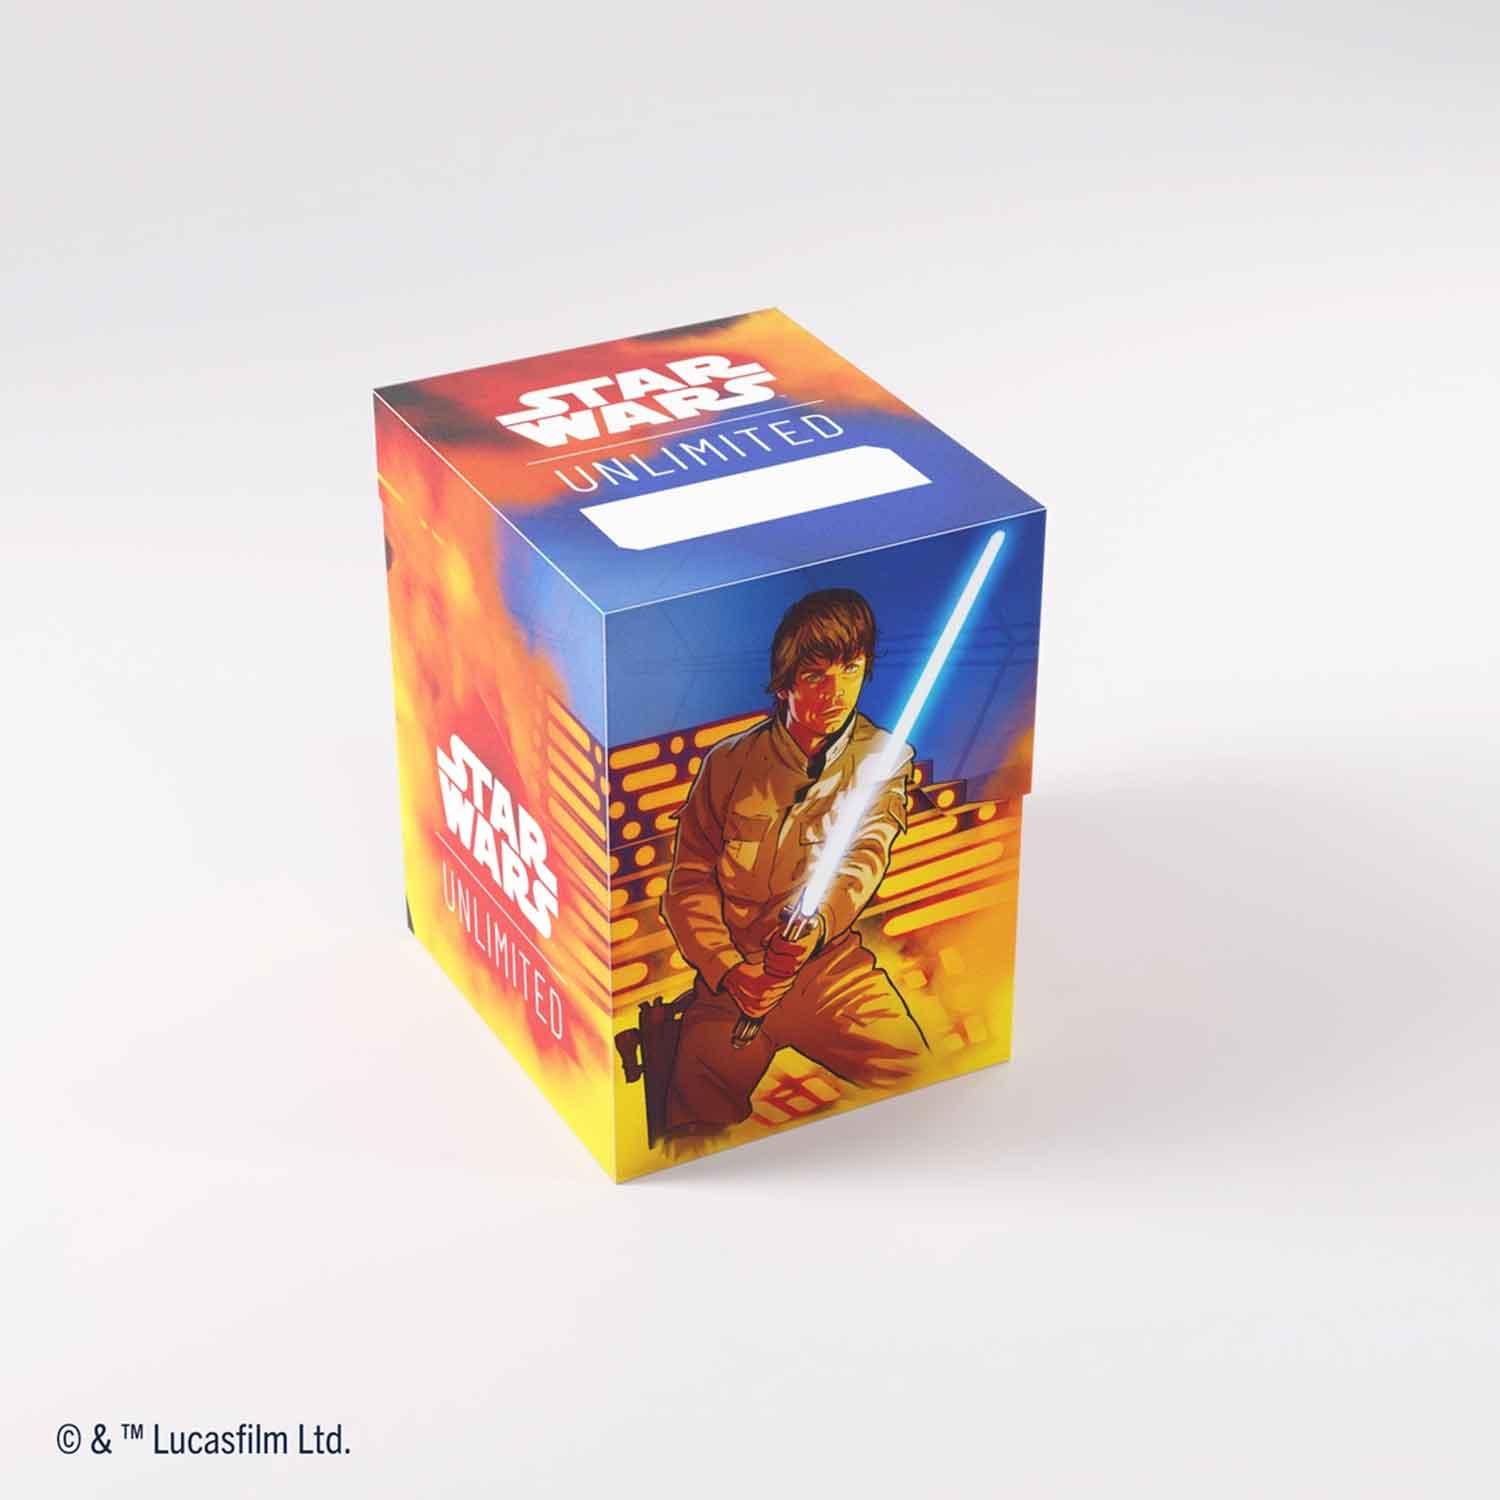 Luke/Vader Star Wars Unlimited Soft Crate